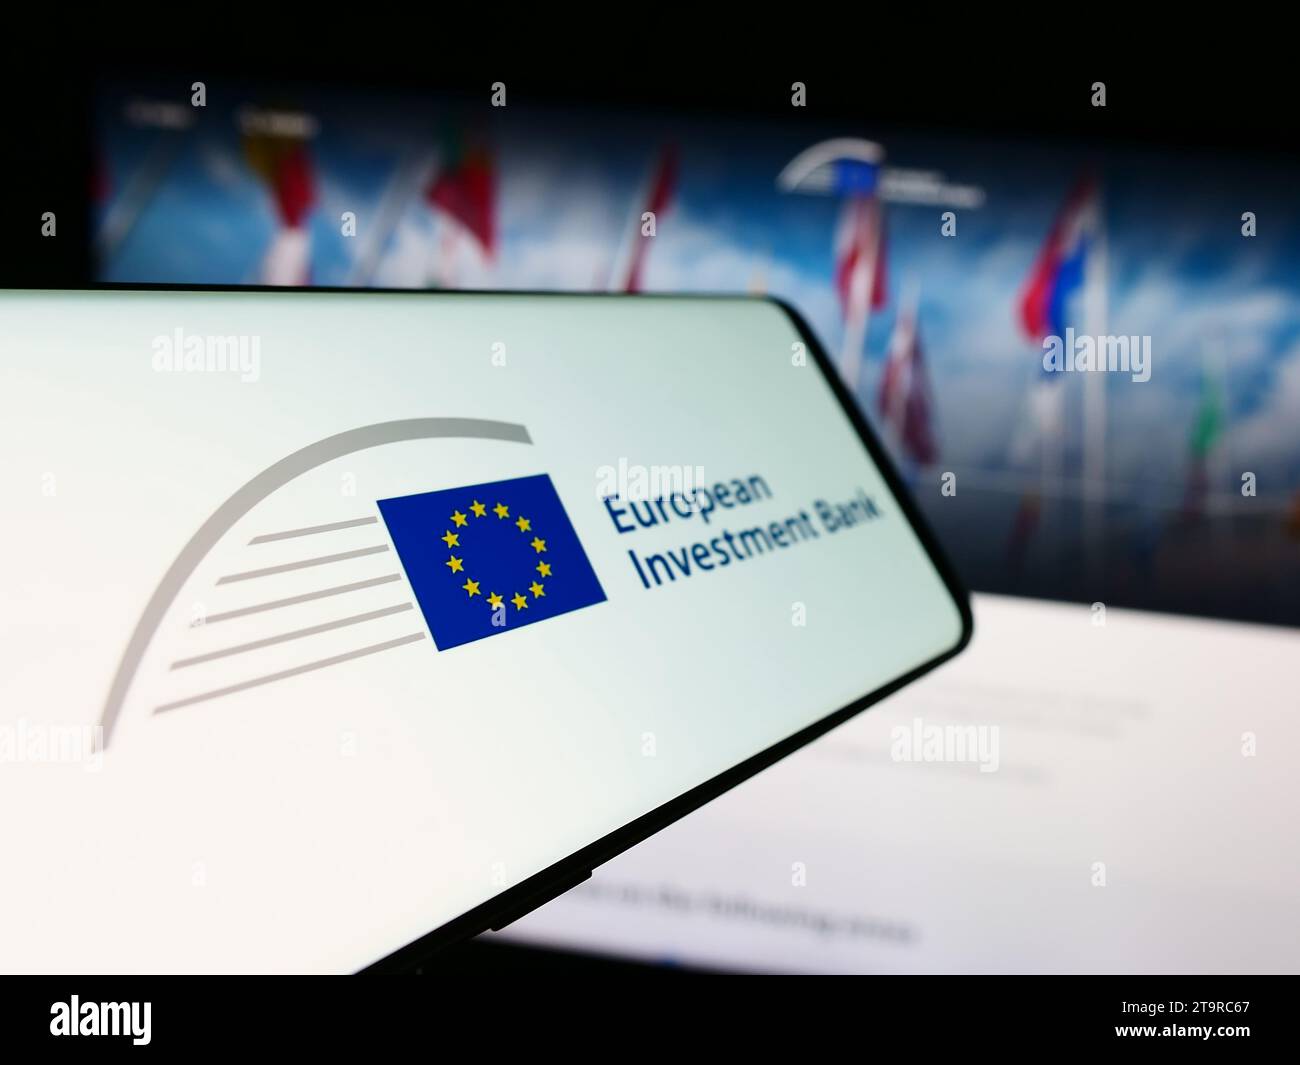 Téléphone portable avec logo de l'institution financière de l'UE Banque européenne d'investissement (BEI) devant le site Internet. Concentrez-vous sur le centre gauche de l'écran du téléphone. Banque D'Images